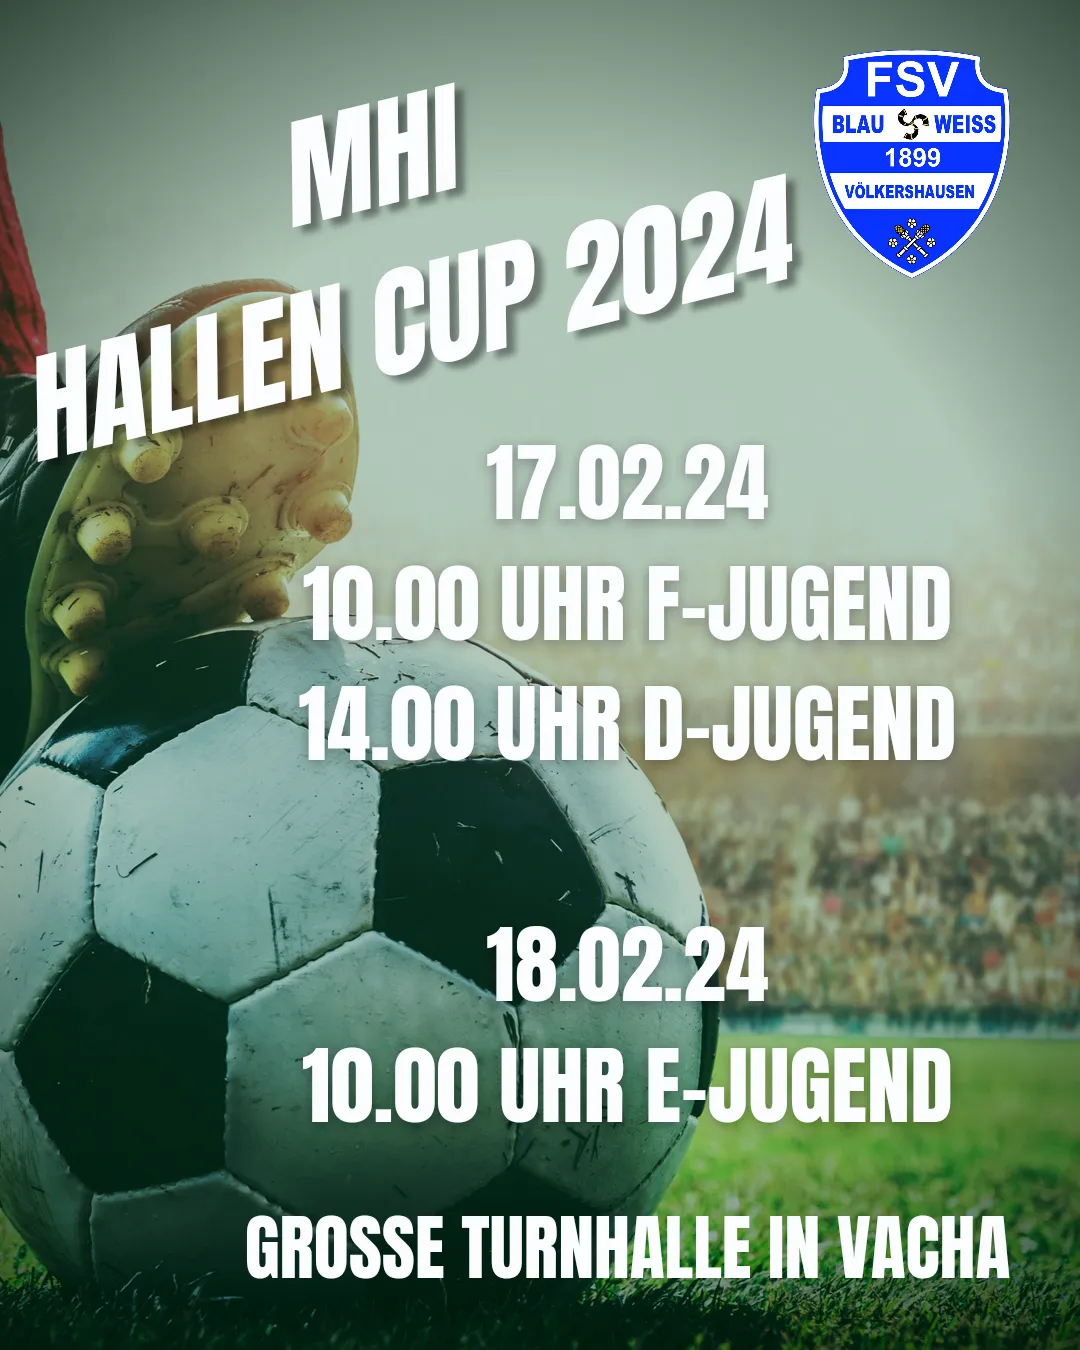 MHI HALLEN CUP 2024